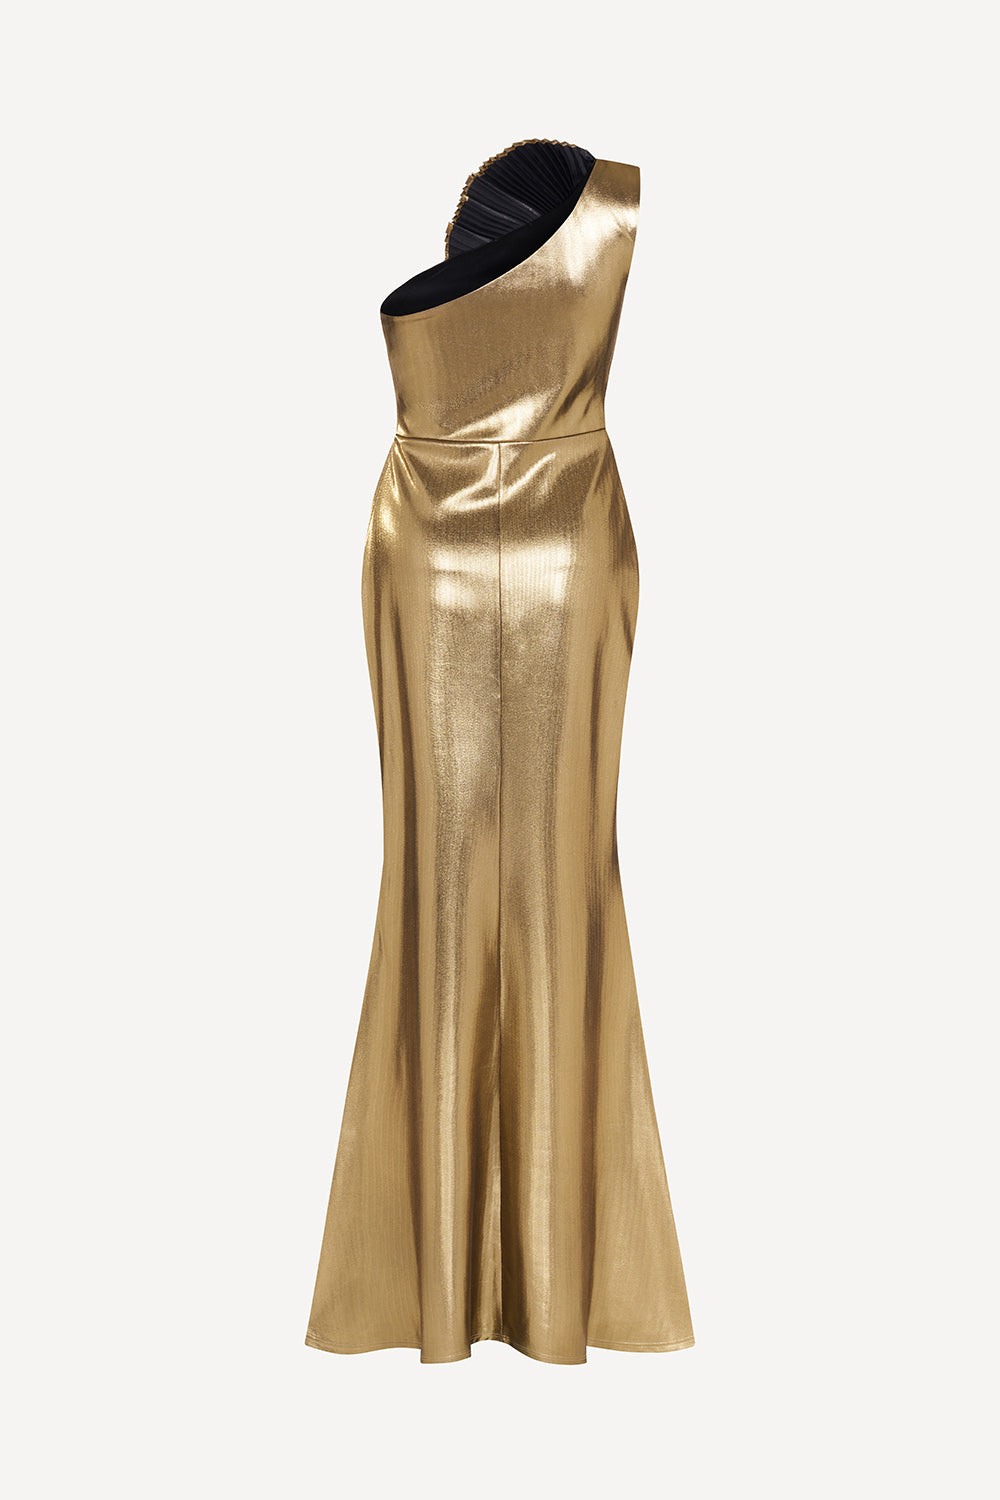 The golden maxi dress